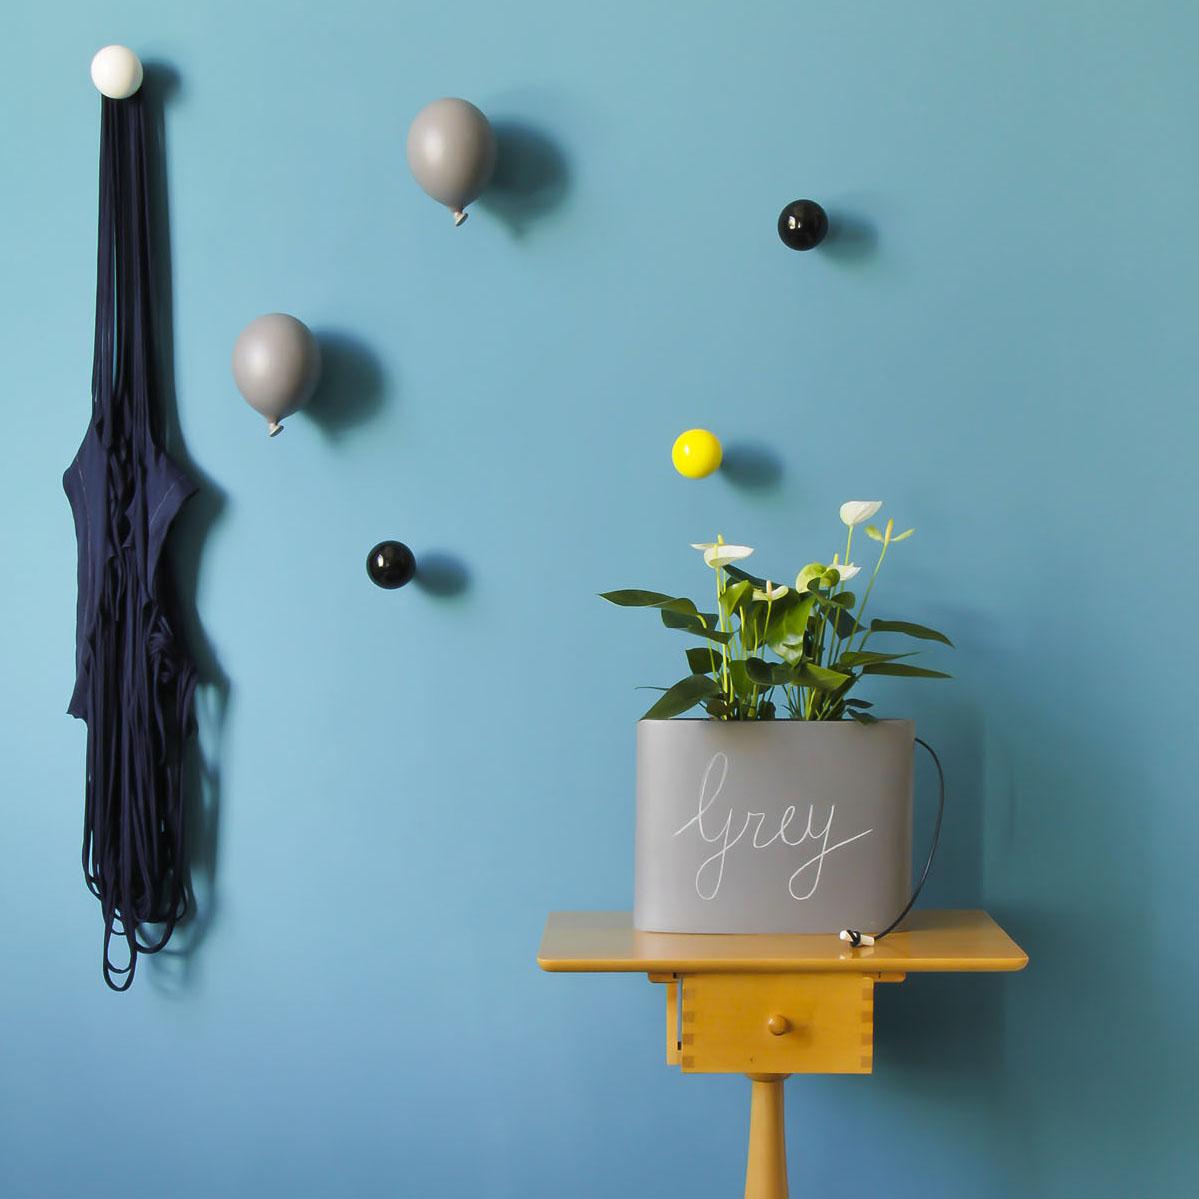 parete azzurra decorata con appendiabiti a forma di palloncino grigio e con diversi pomelli appendiabiti in ordine sparso